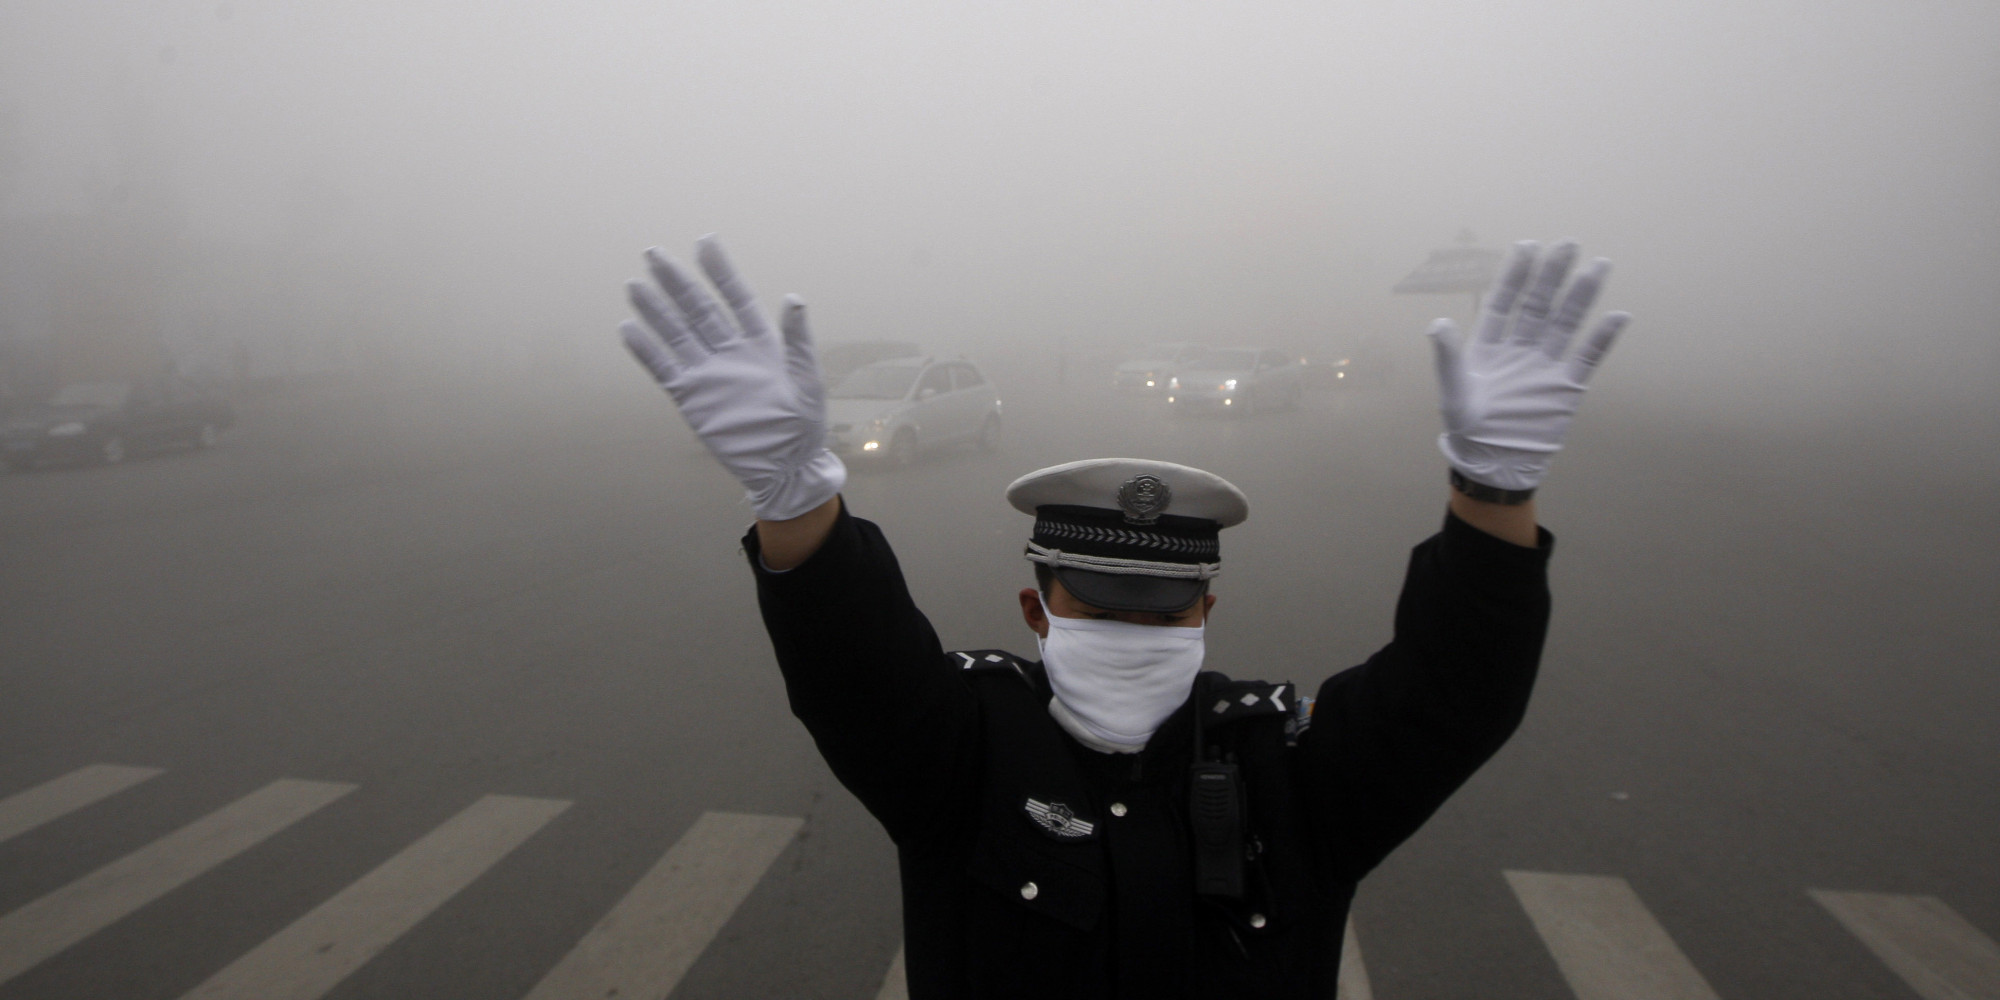 ضابط مرور أثناء أداء عمله فى الضباب الدخانى ببكين